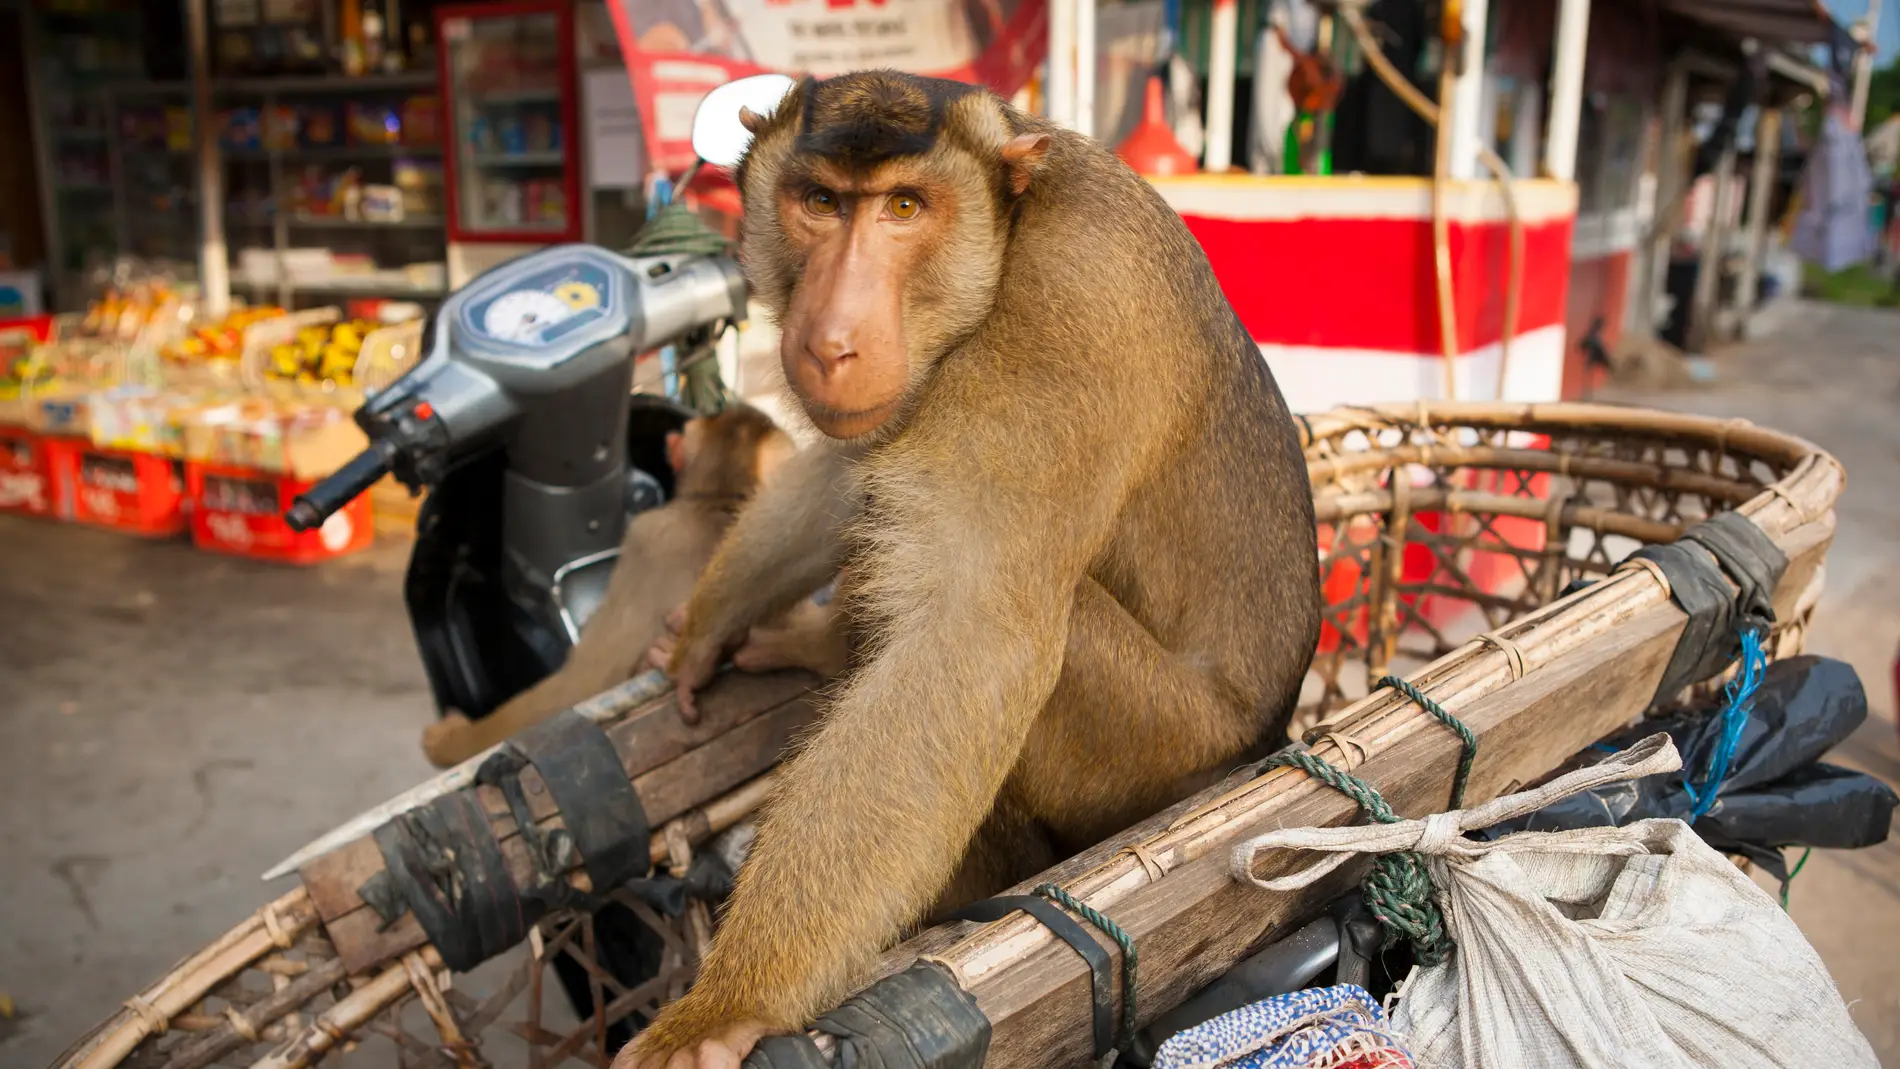 ventajoso Indefinido Retirarse Un mono en moto que intenta secuestrar a una niña se convierte en el tuit  más visto del día